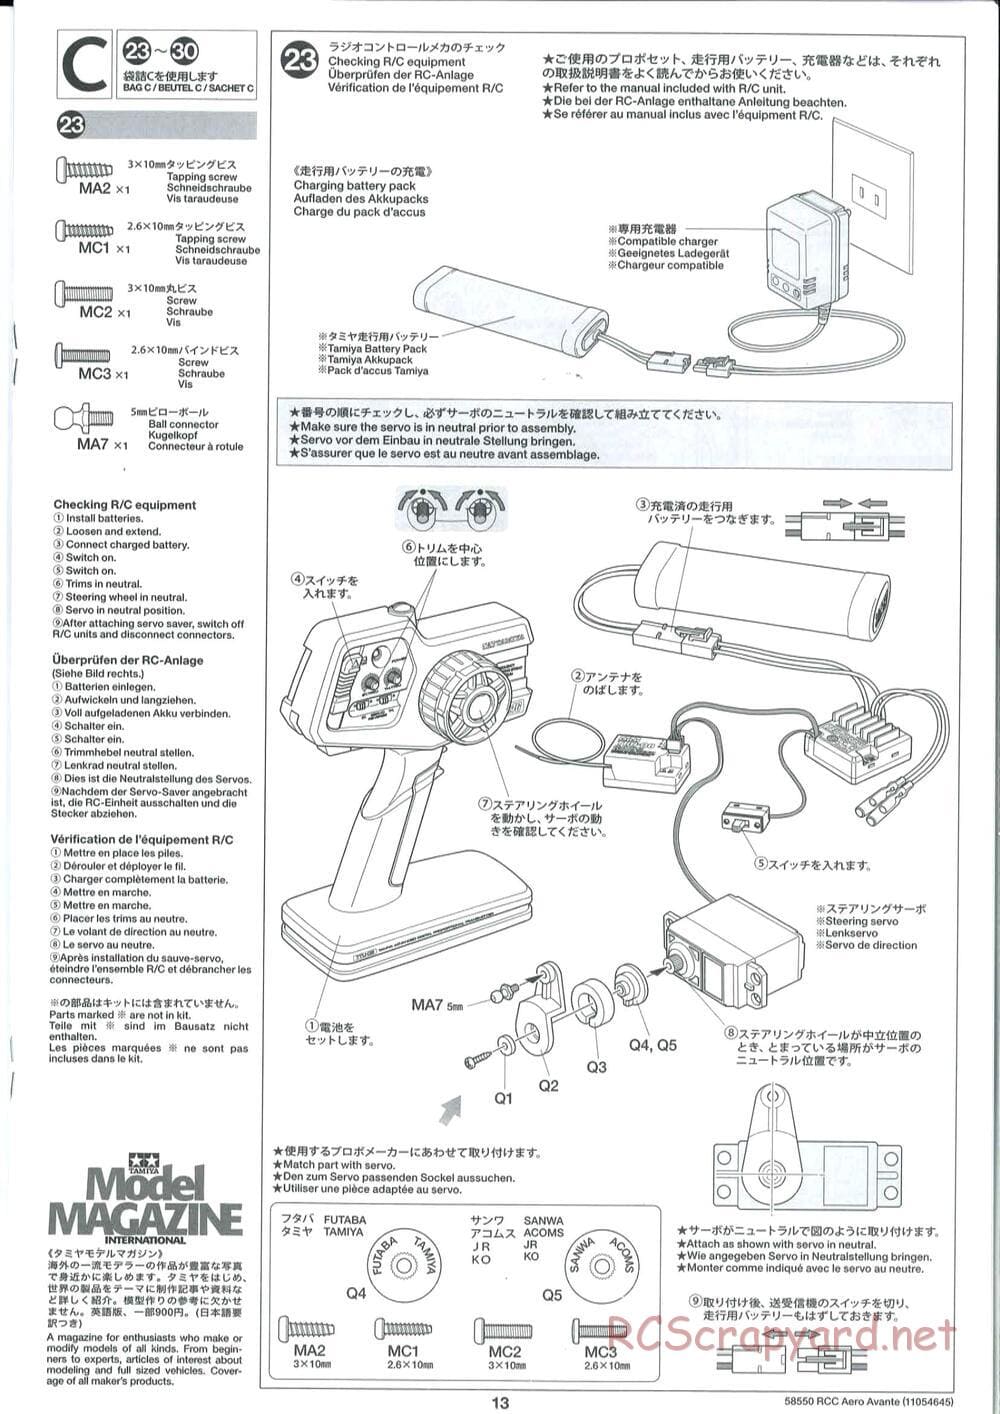 Tamiya - Aero Avante Chassis - Manual - Page 13